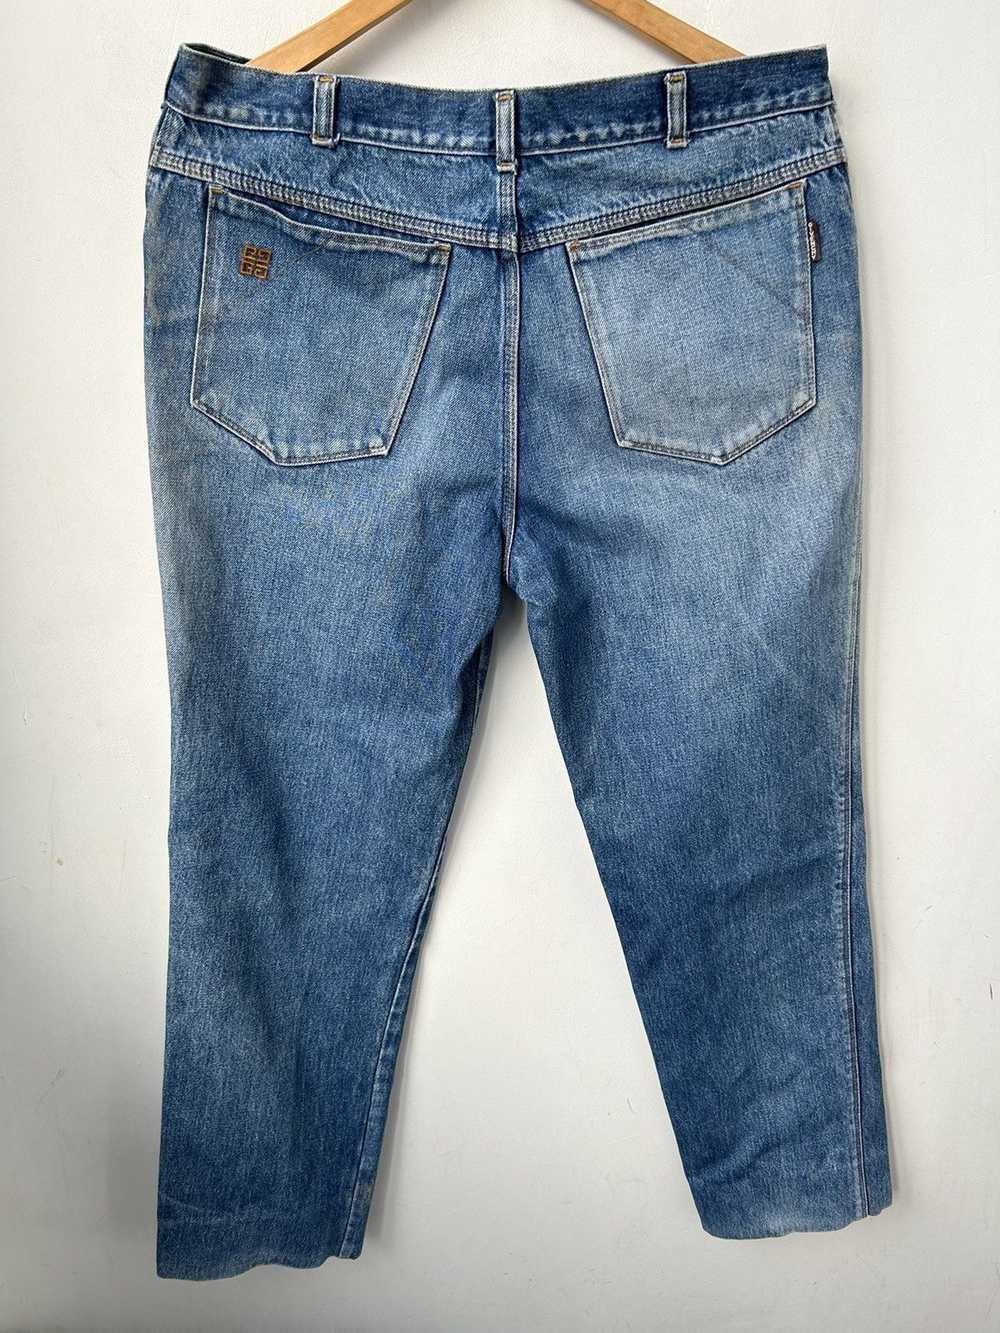 Givenchy × Streetwear × Vintage Vintage jeans - image 7